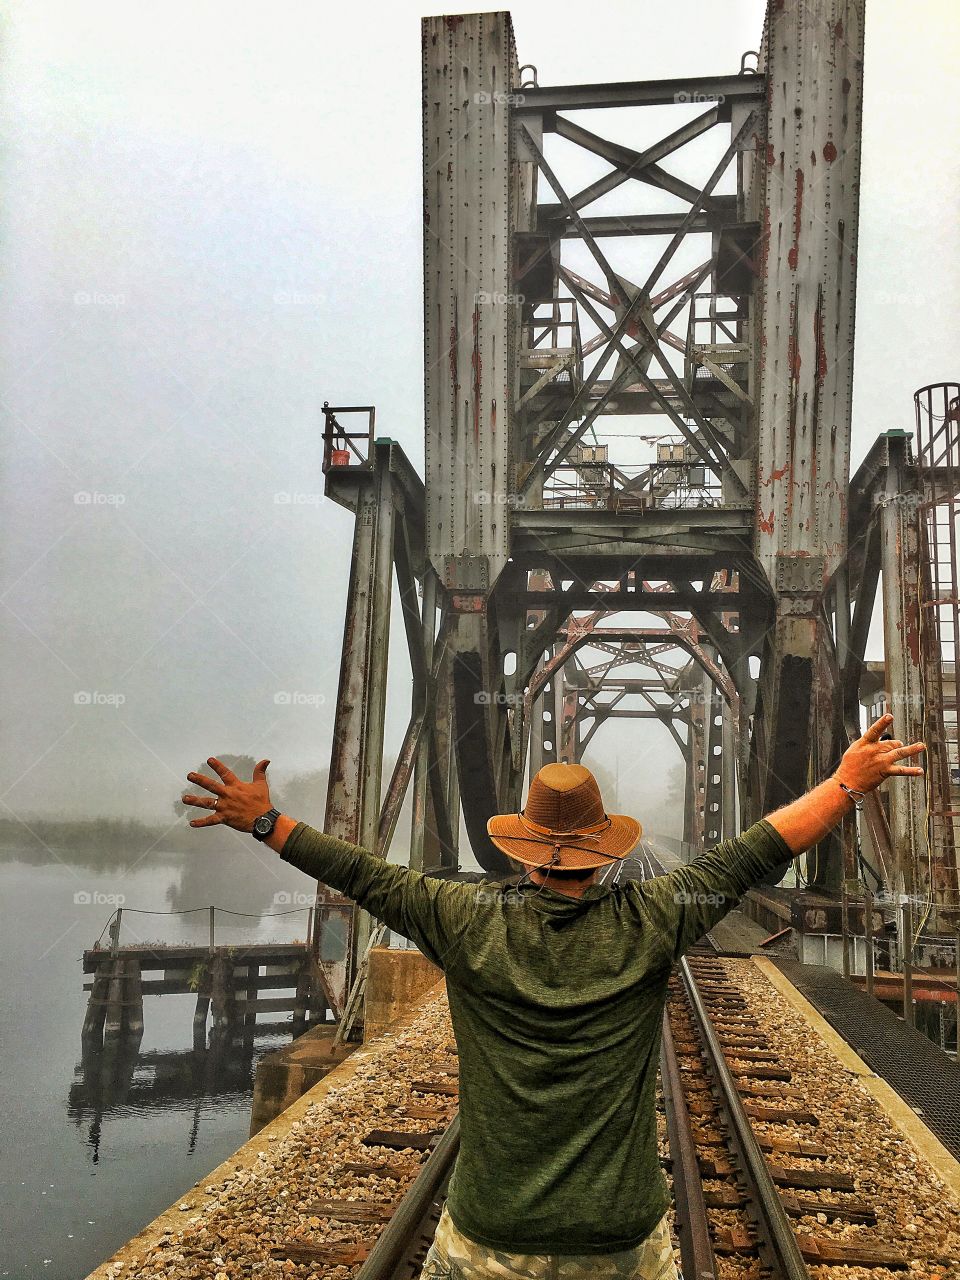 Railway bridge and crazy man